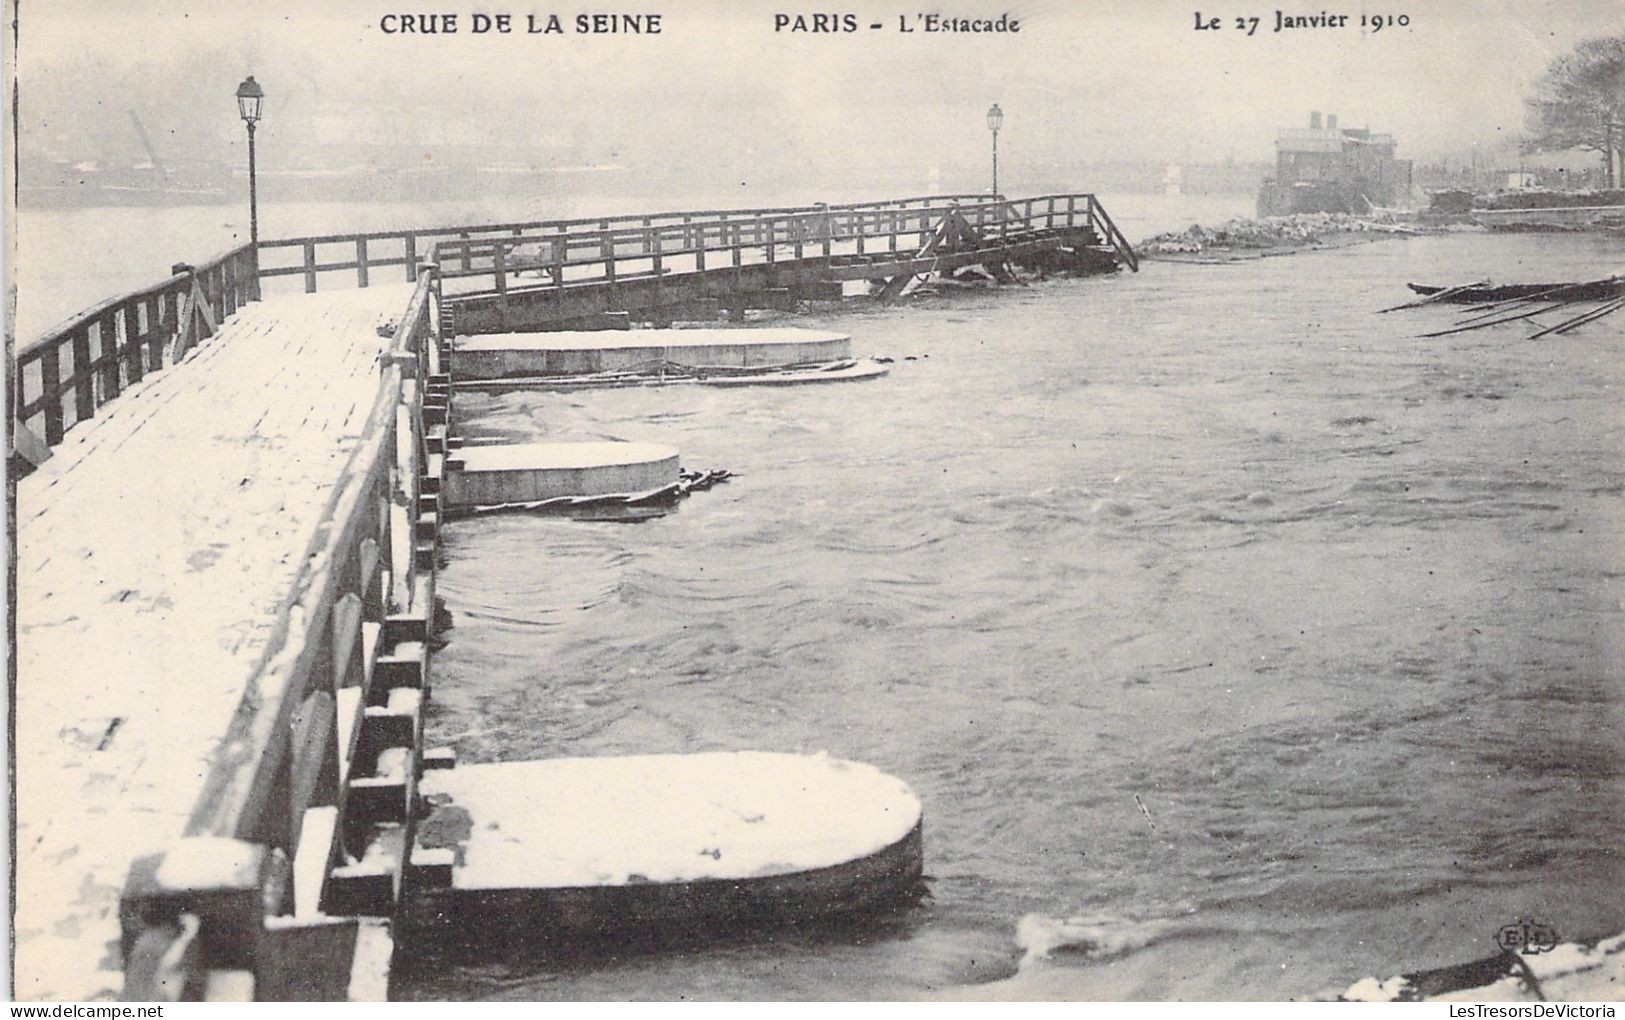 FRANCE - Paris - La Grande Crue De La Seine - L'estacade - 27 Janvier 1910 - Carte Postale Ancienne - De Seine En Haar Oevers